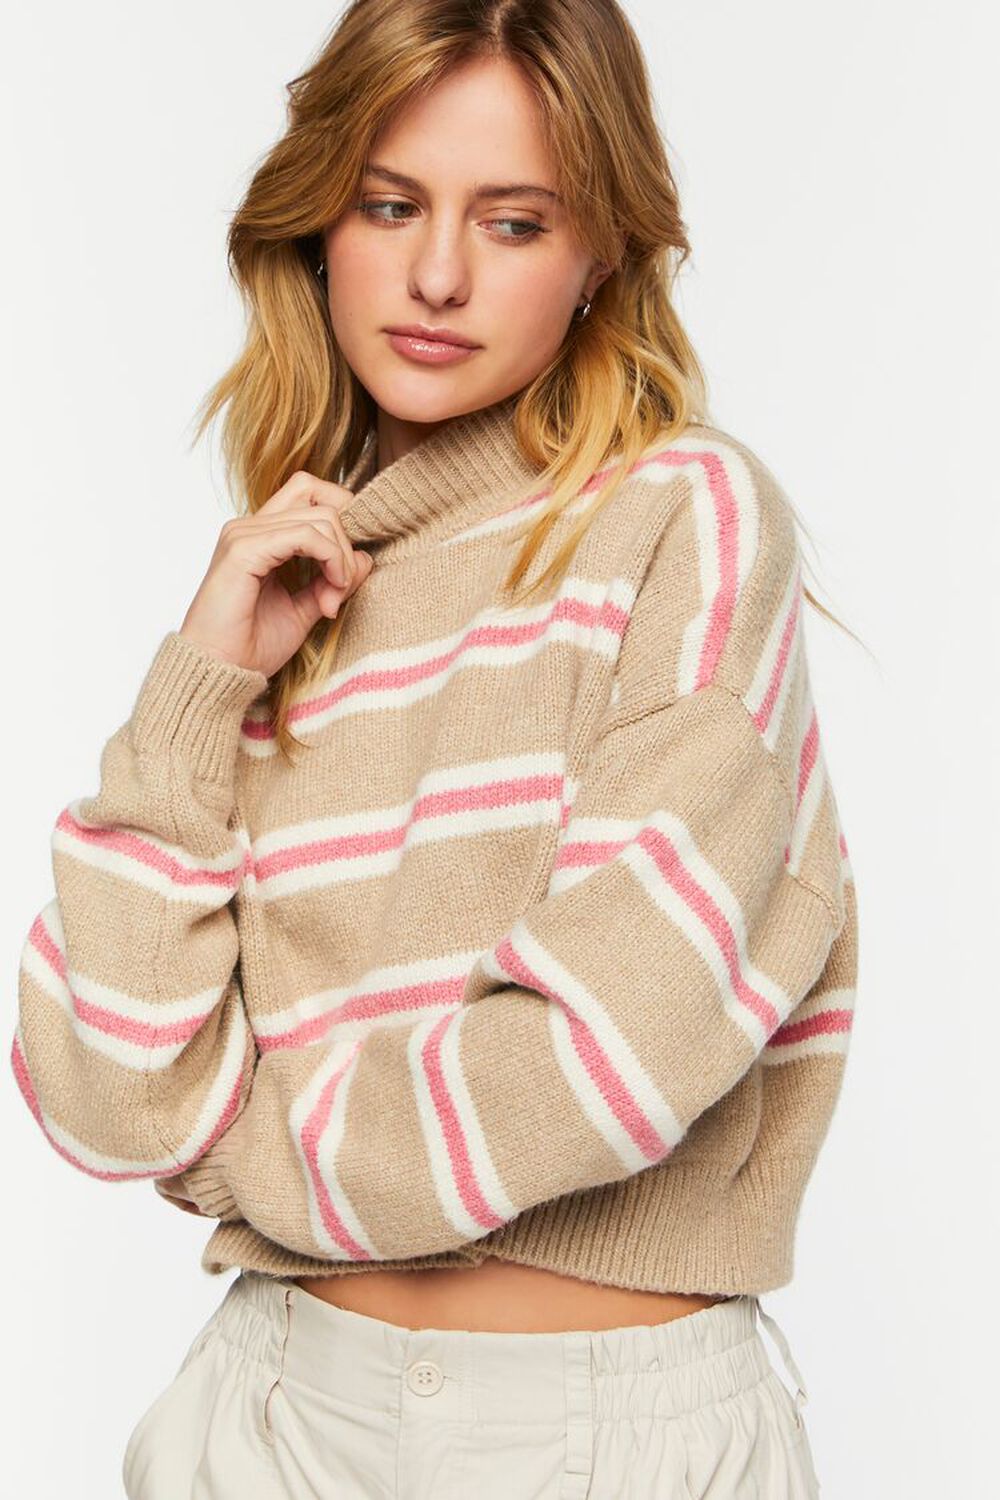 KHAKI/PEONY Striped Mock Neck Sweater, image 1